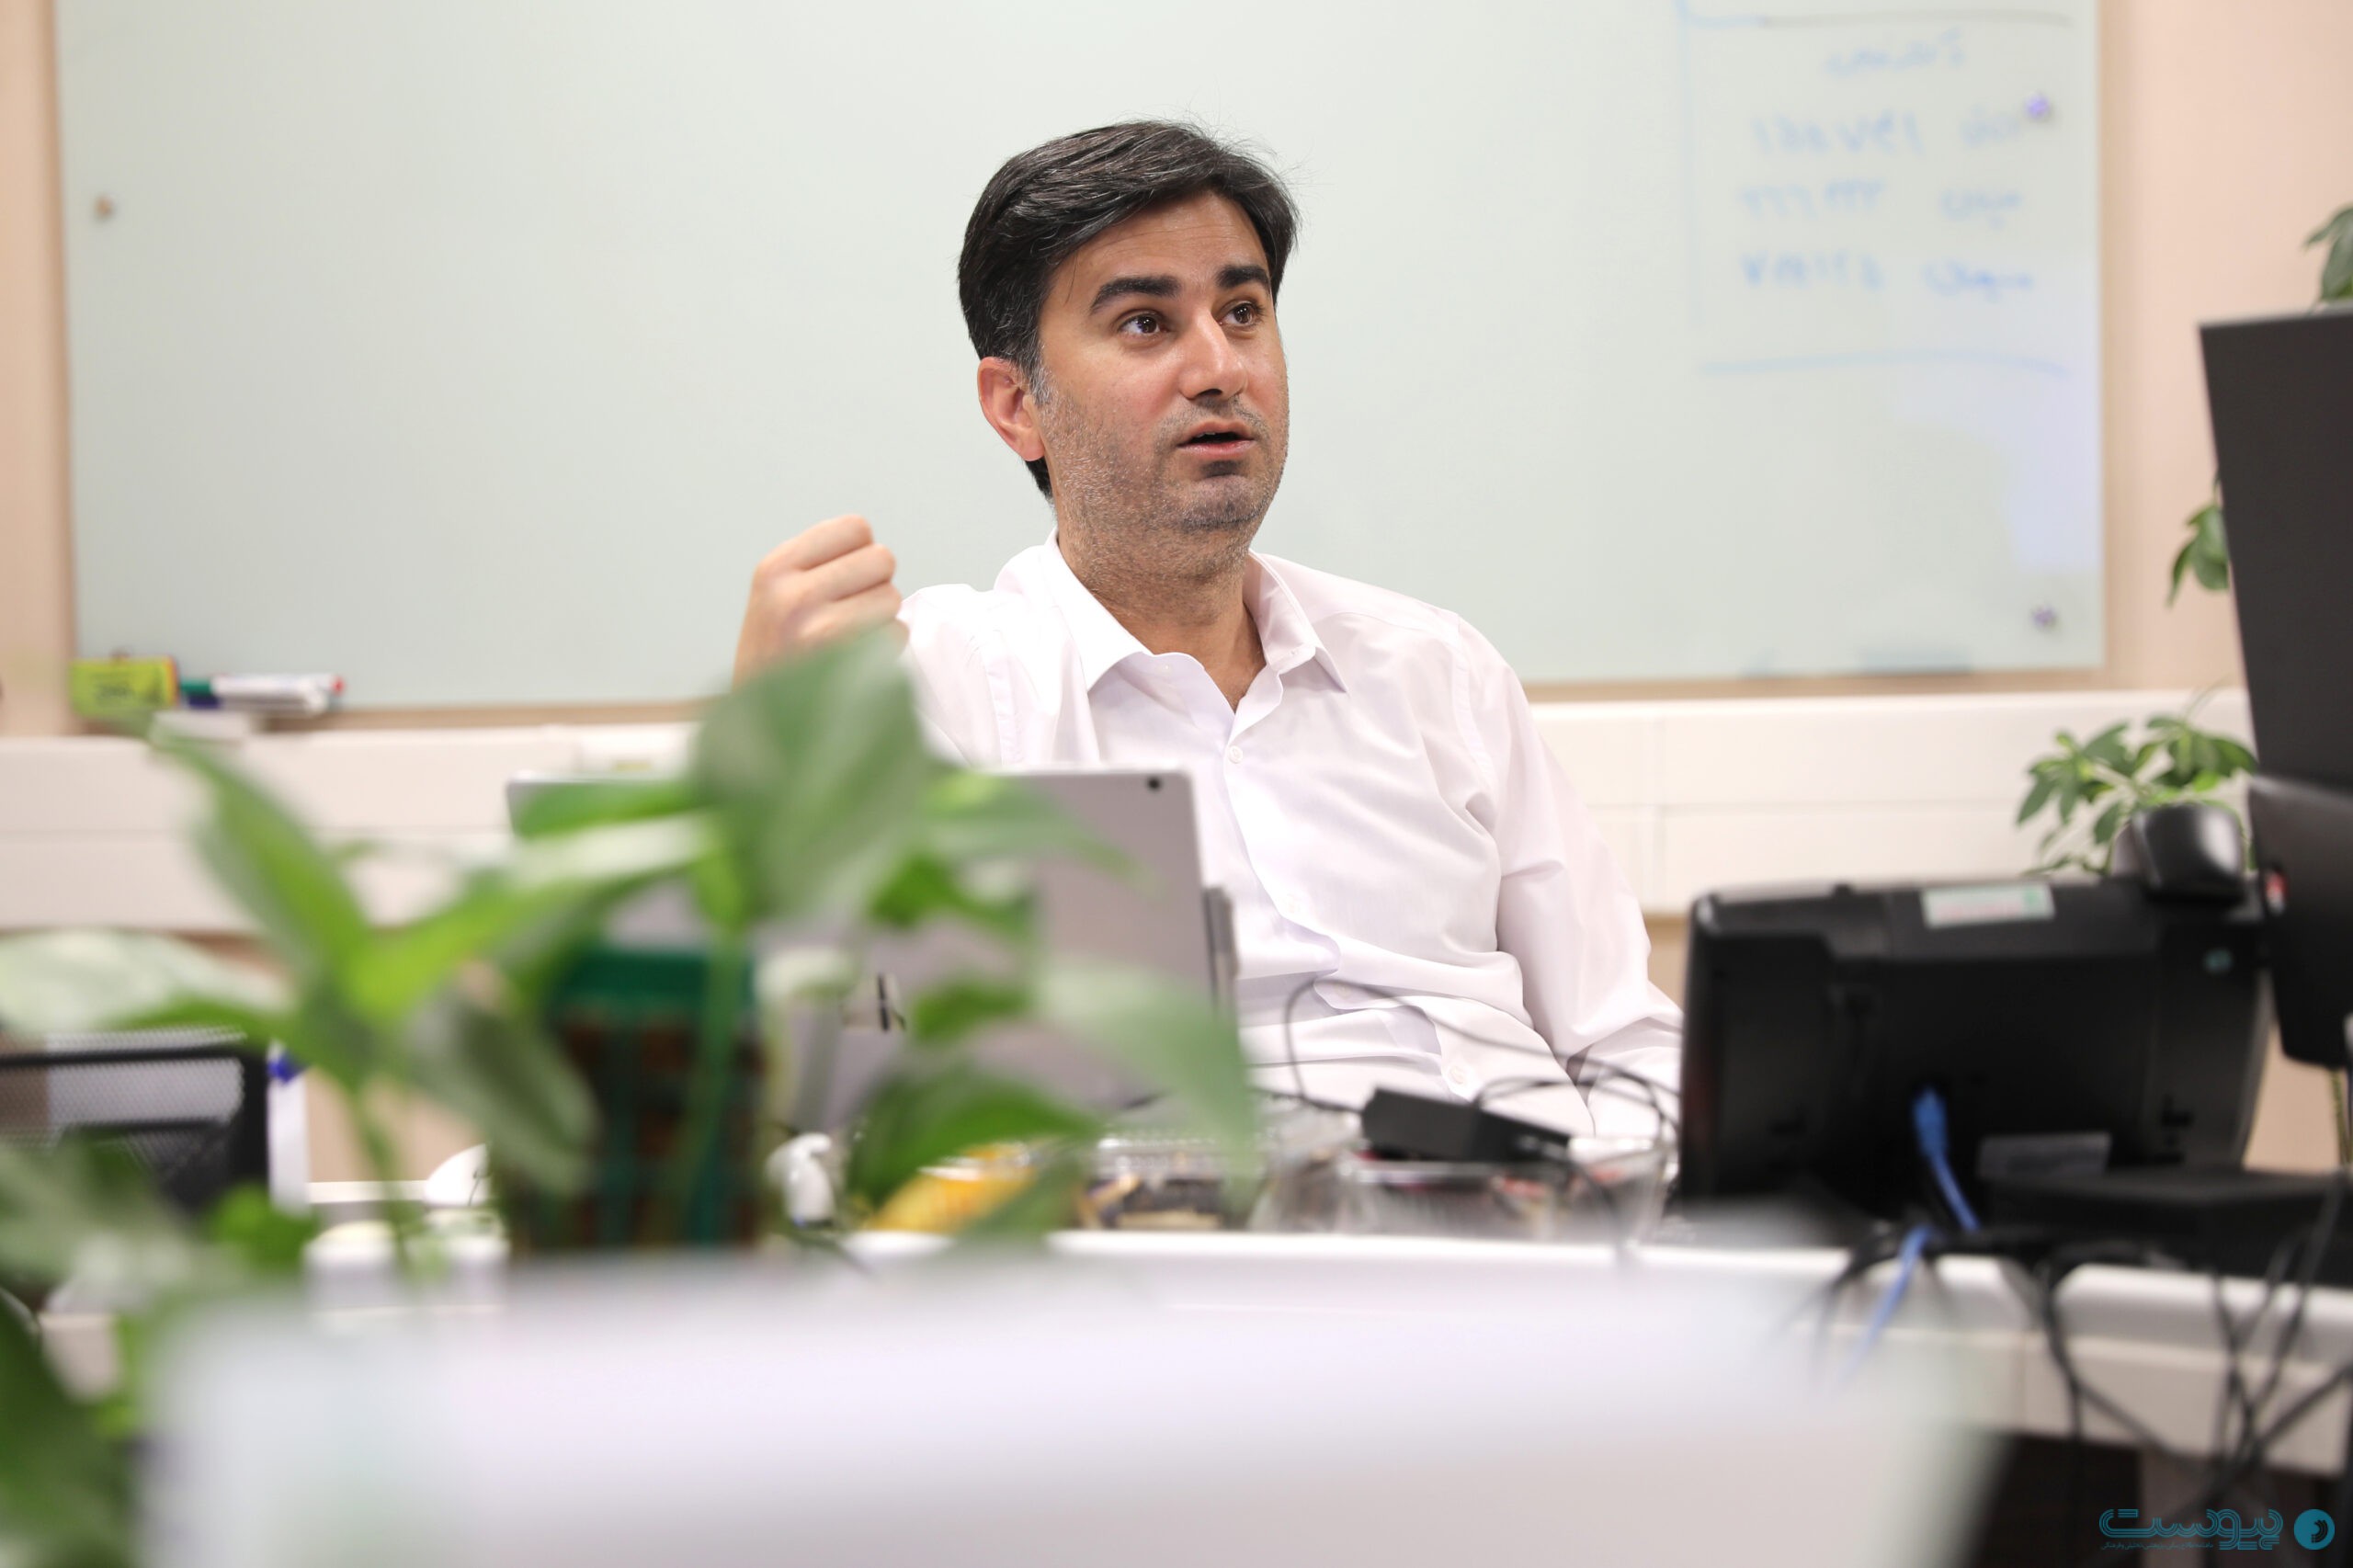 حسام مقصودلو، مشاور ارشد سازمان فناوری اطلاعات شهرداری تهران